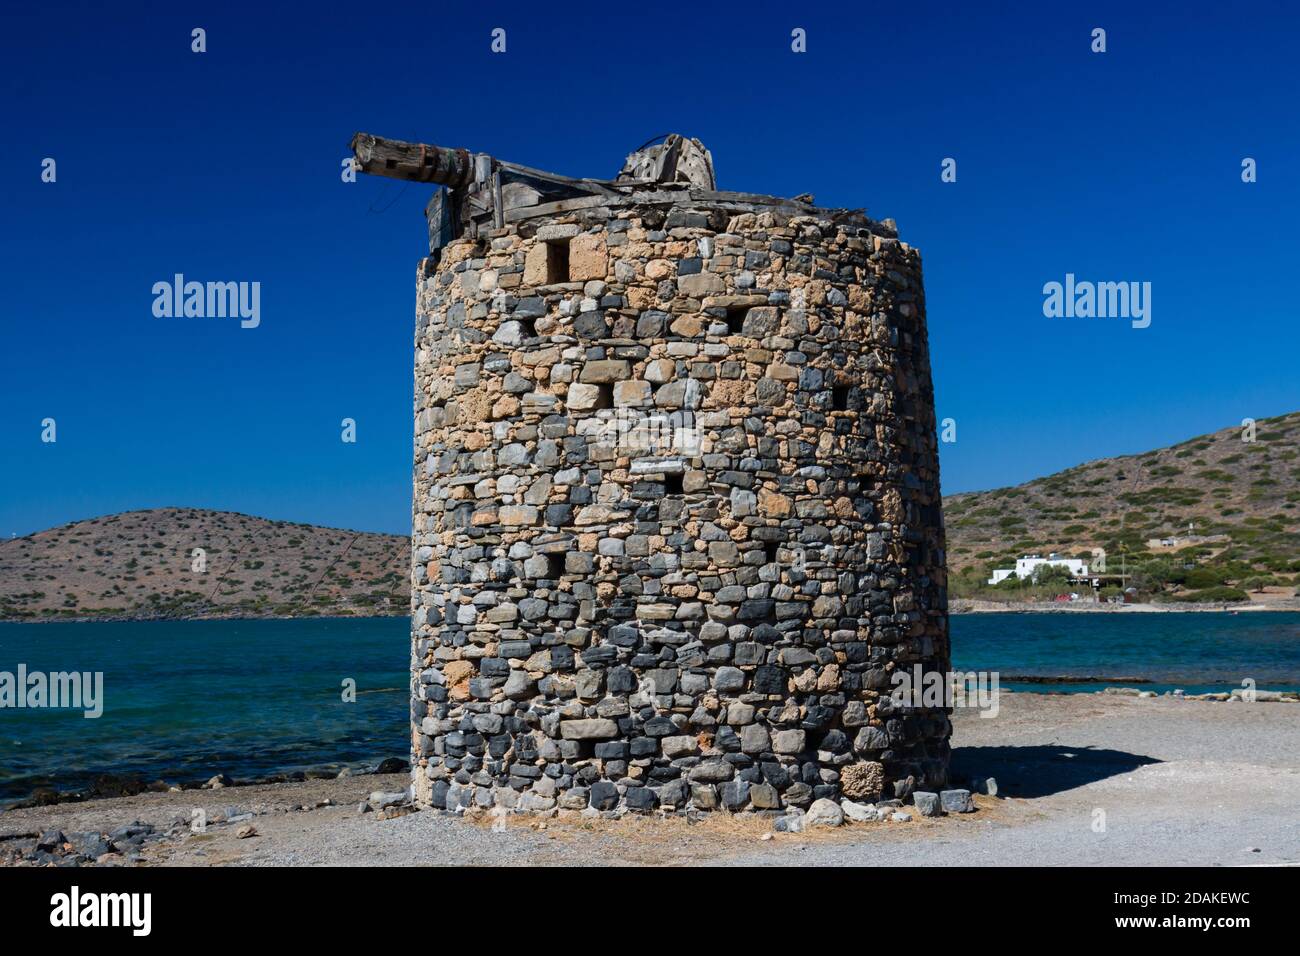 Remains of old, stone windmills on the Kolokitha peninsula near the town of Elounda, Crete Stock Photo